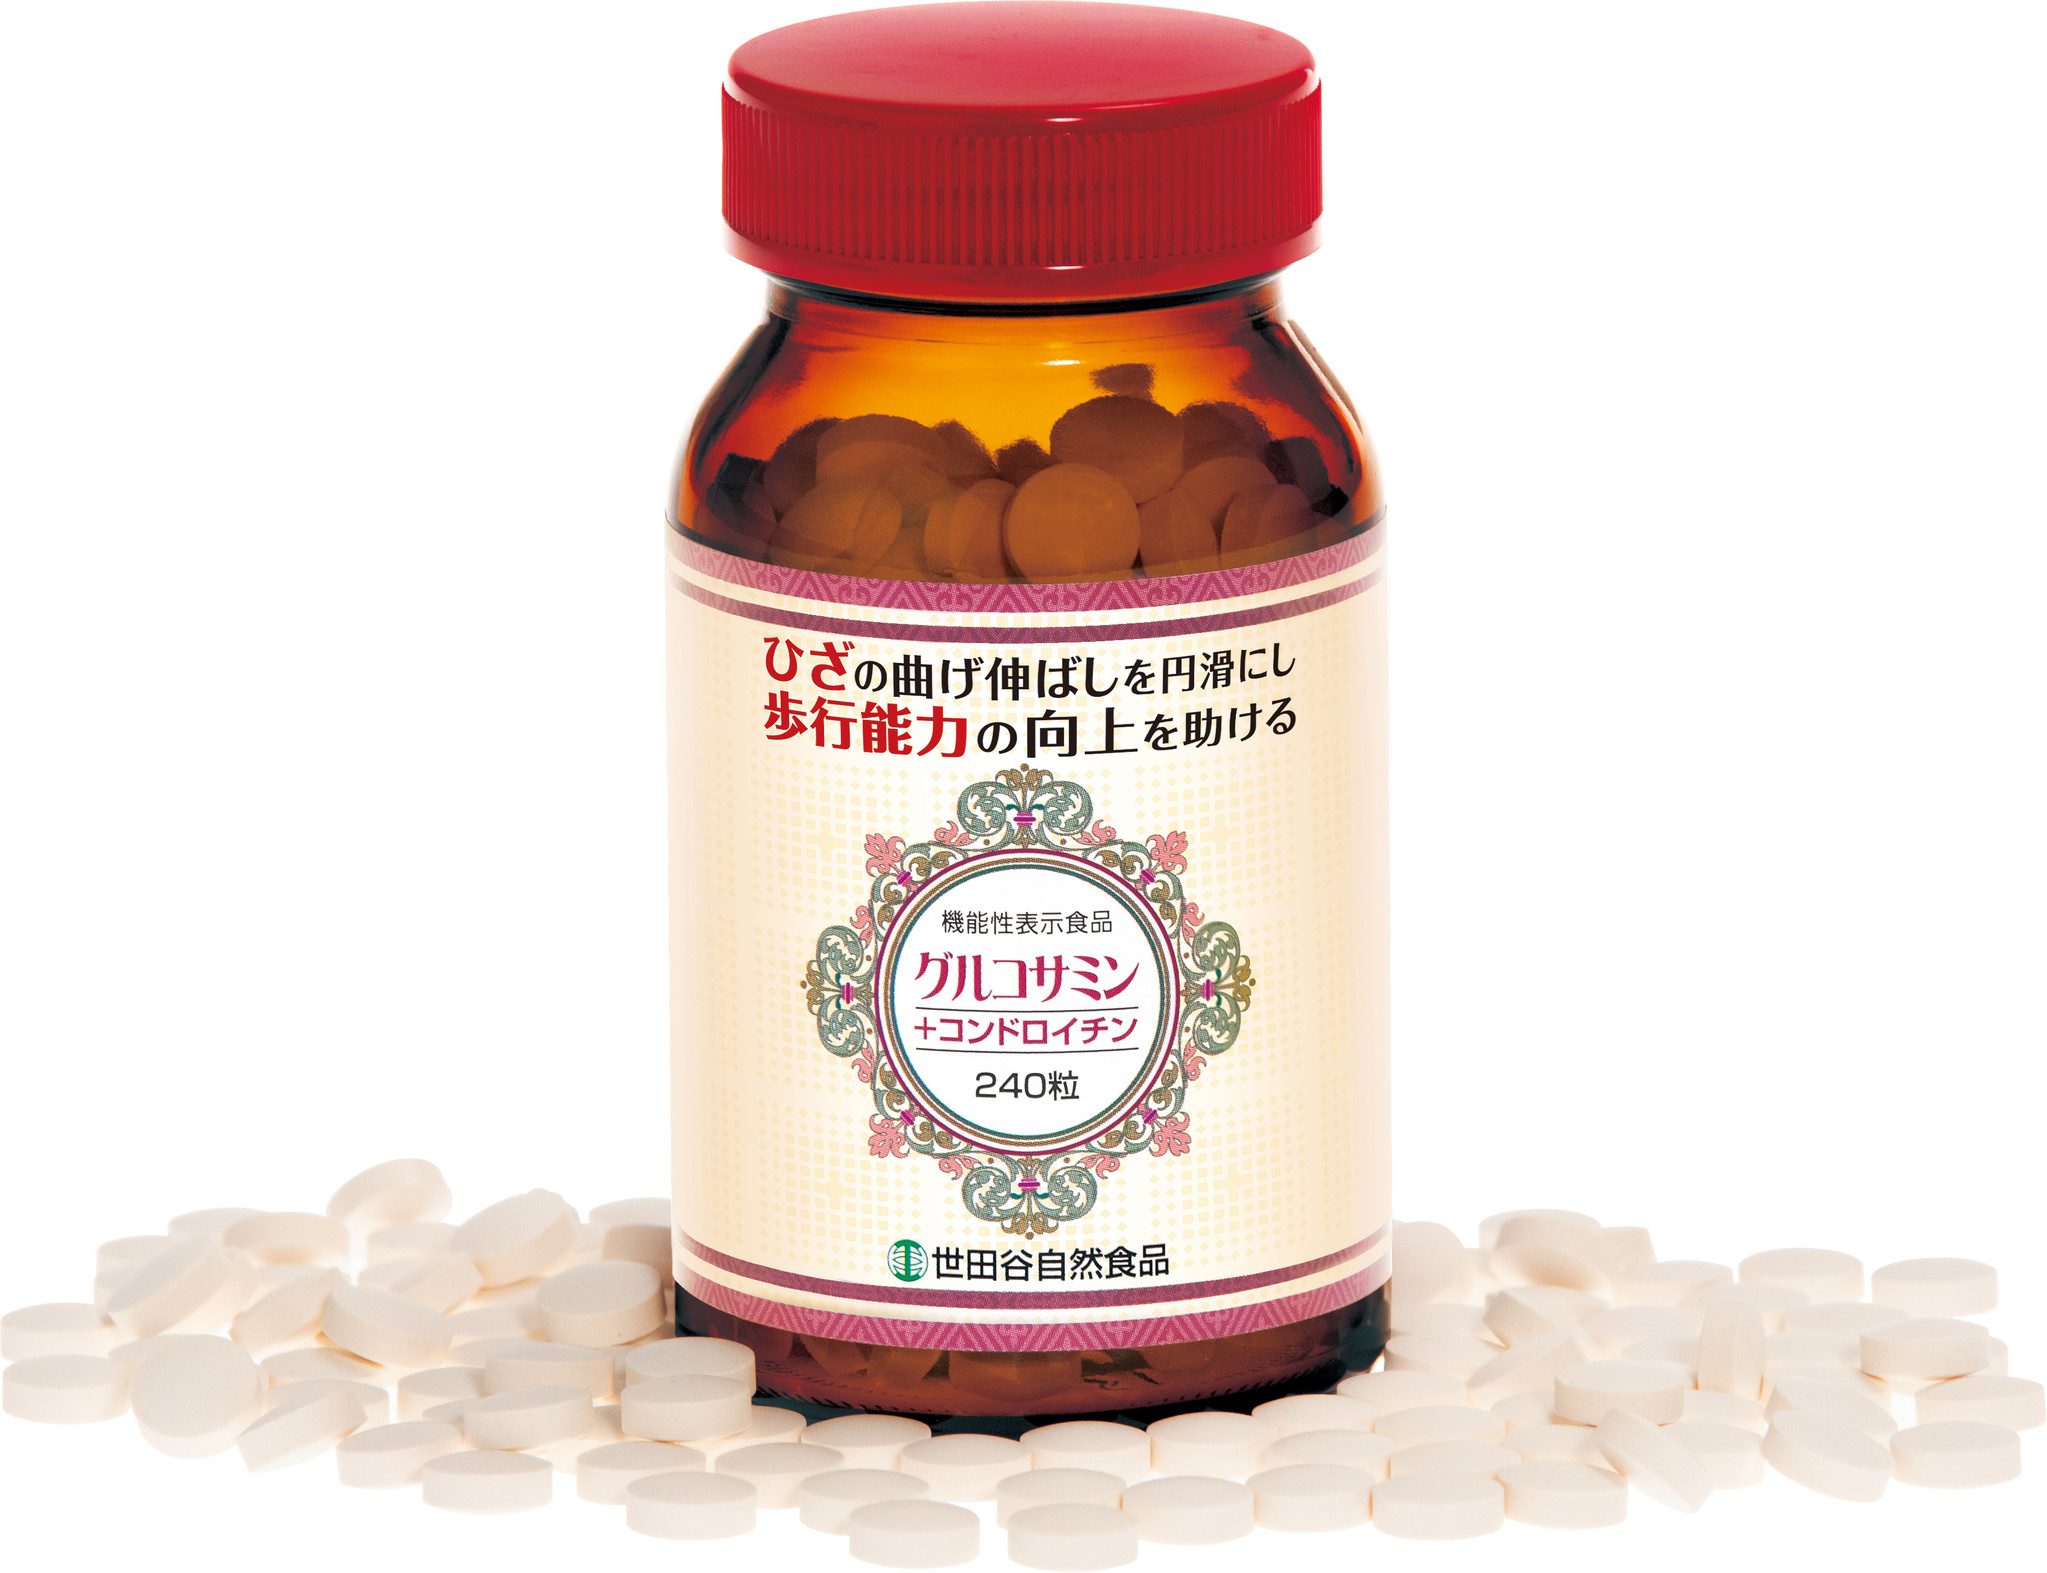 世田谷自然食品 グルコサミン+コンドロイチン 240粒 - 健康用品